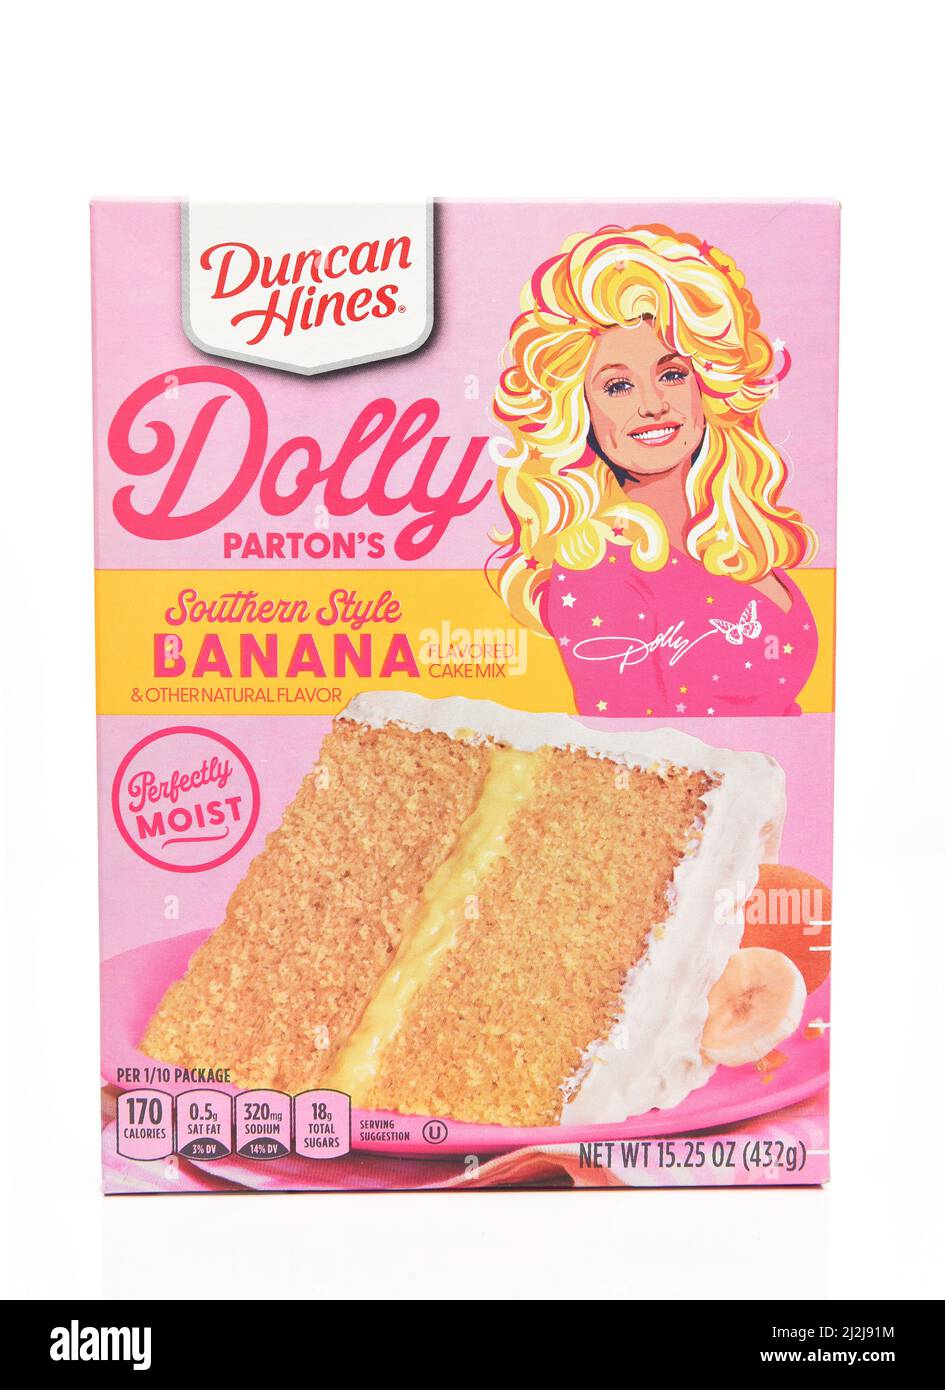 IRVINE, CALIFORNIE - 1 avril 2022 : boîte de Dolly Parton, mélange de gâteau de Banana de style sudiste de Duncan Hines. Banque D'Images